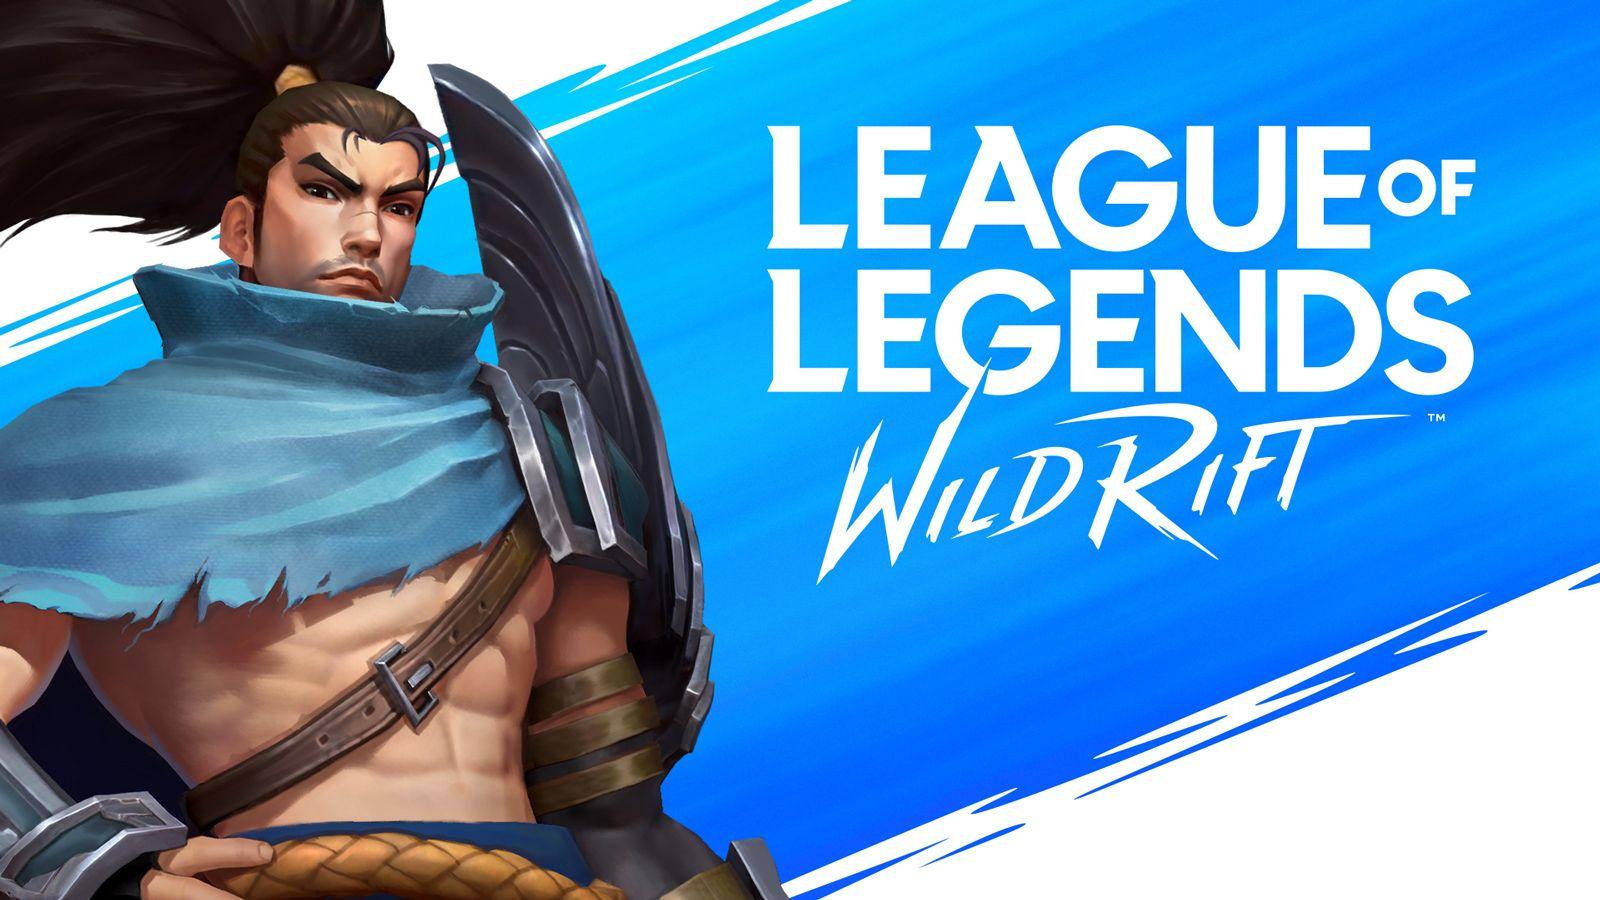 Video Game League of Legends: Wild Rift 4k Ultra HD Wallpaper by